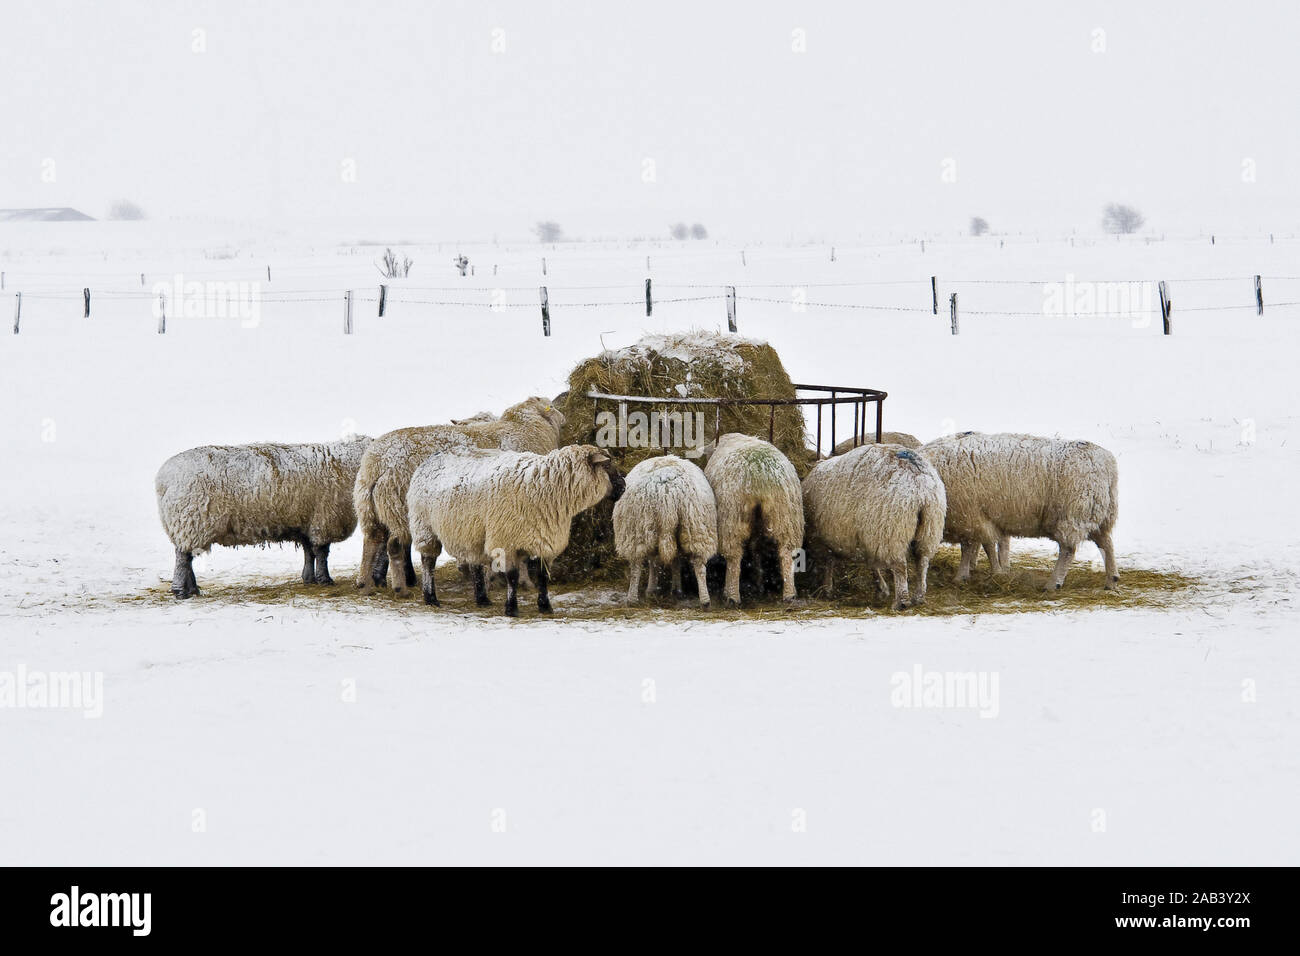 Schafe an der Nordseeküste im Schnee auf der Weide |Sheep on the North Sea in the snow on the meadow| Stock Photo